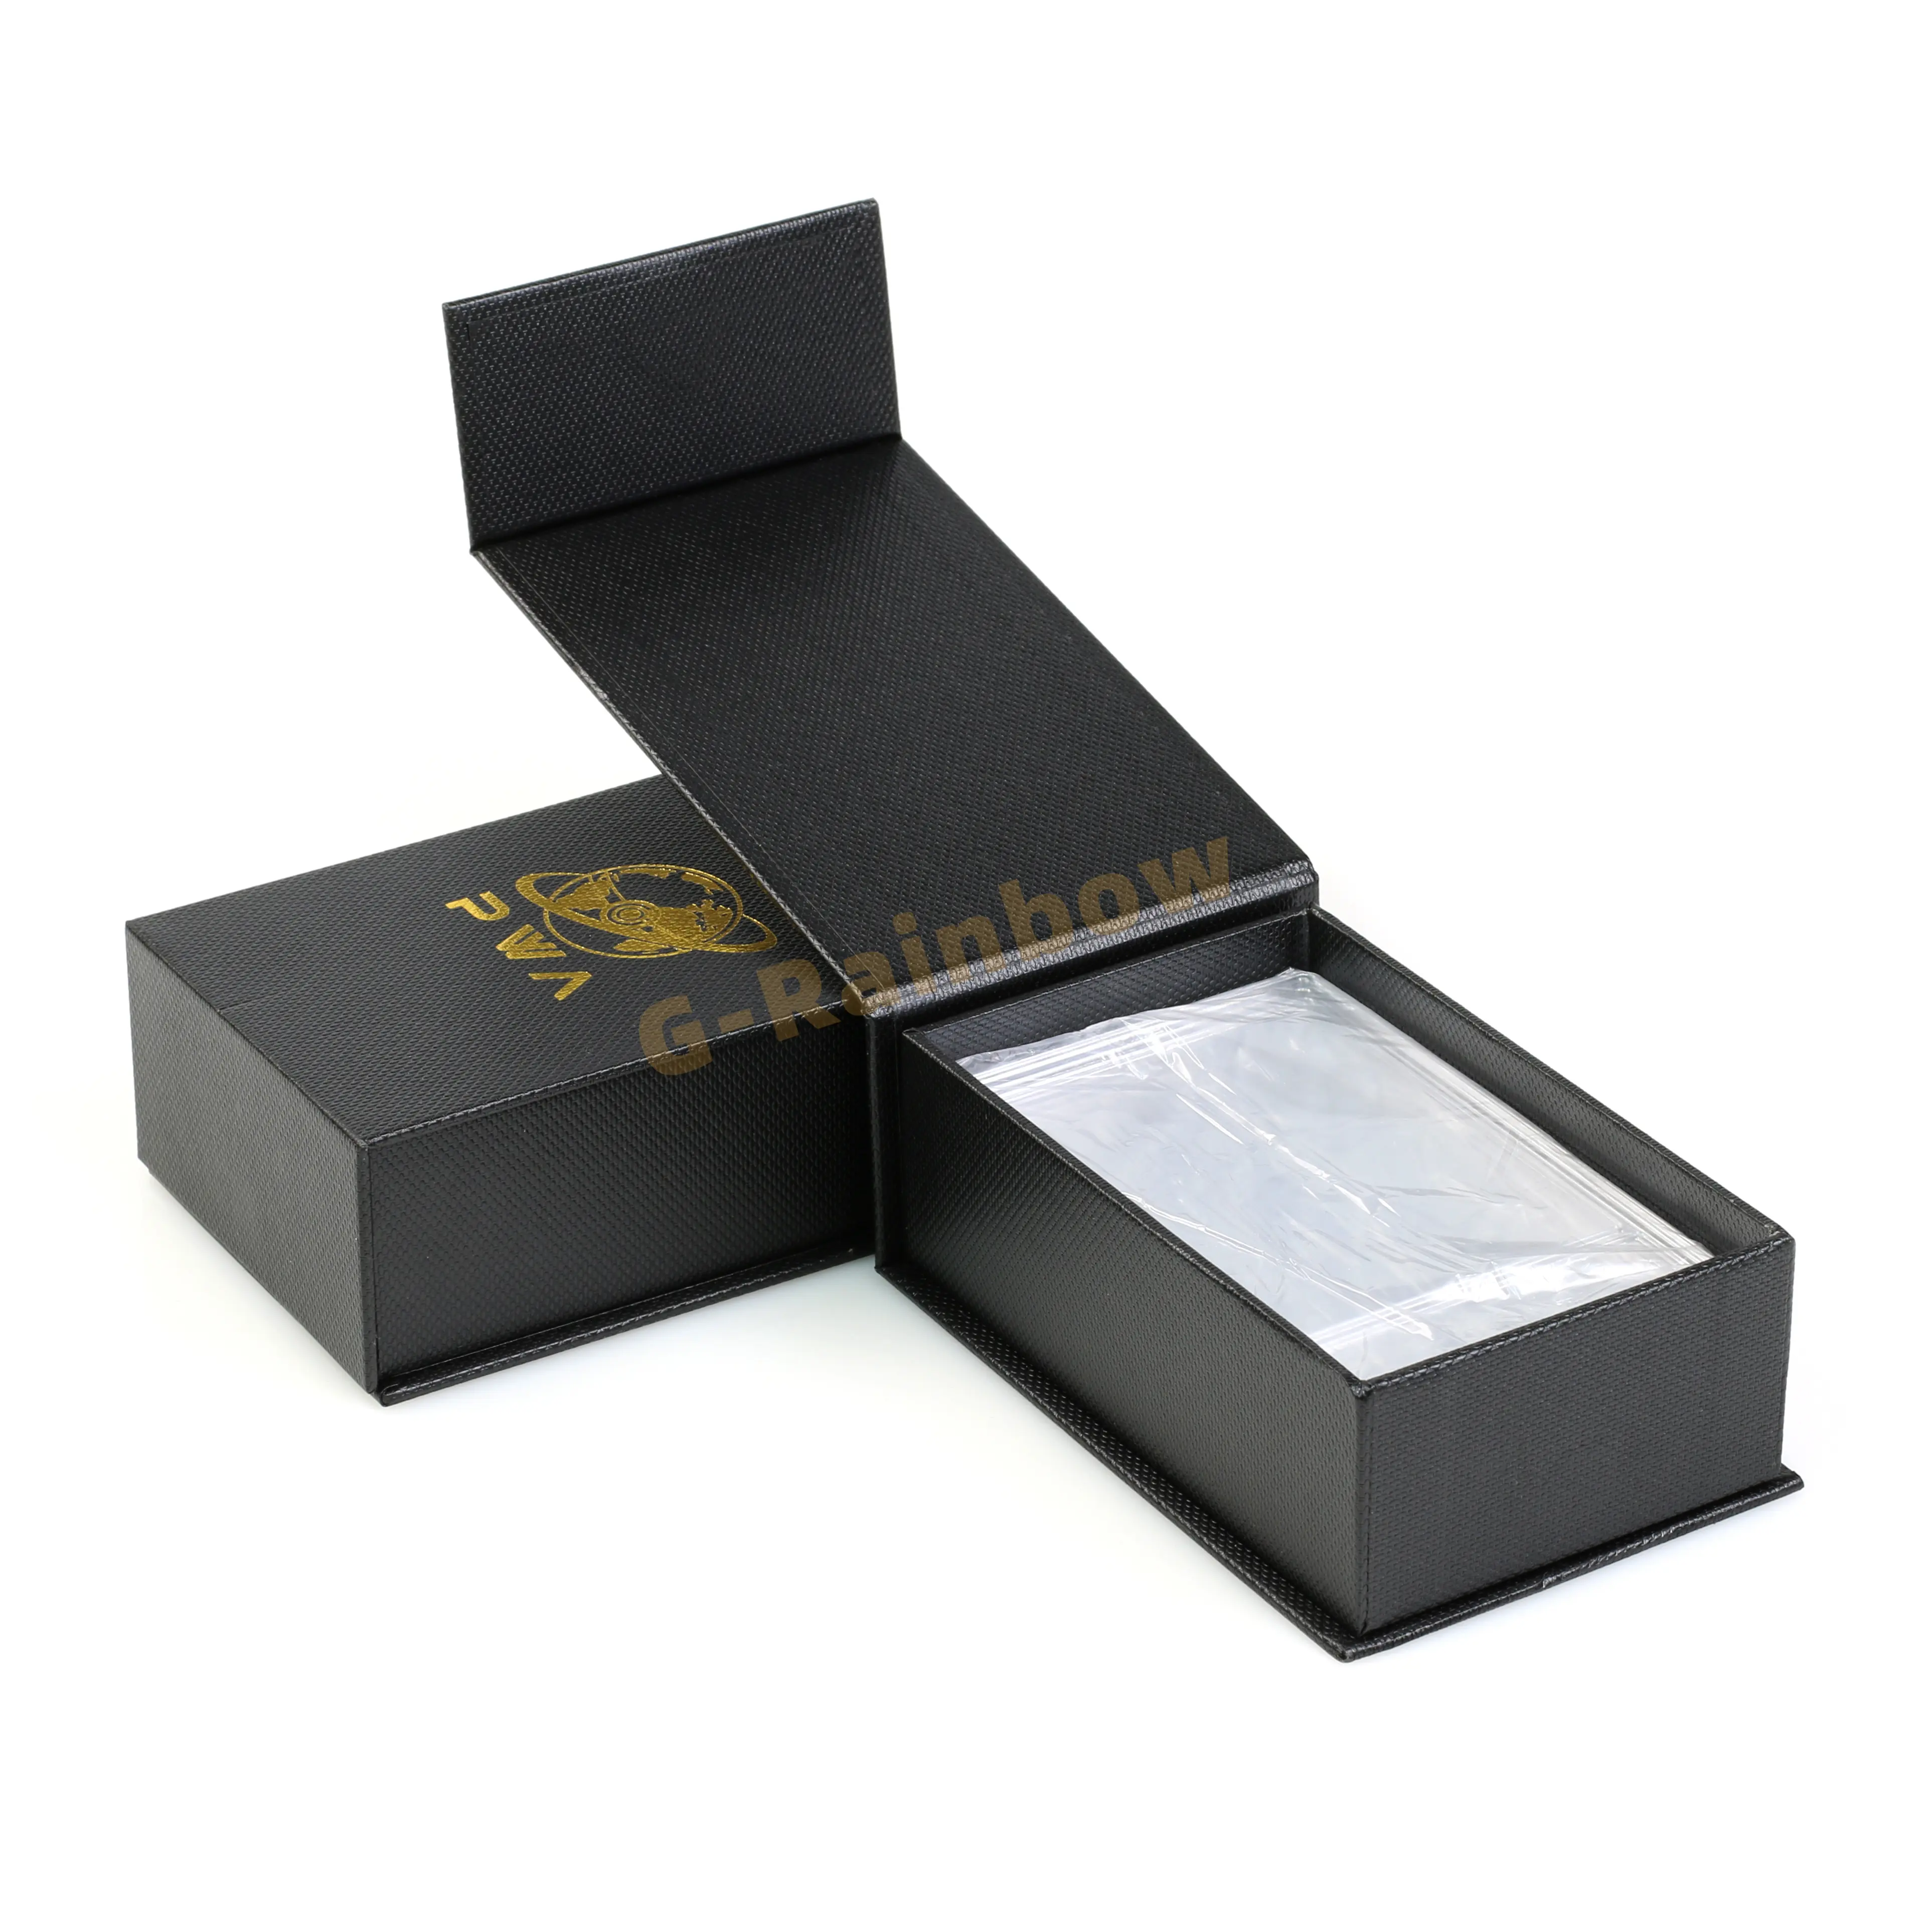 แผ่น P-SA การ์ดกล่องกระดาษฟอยล์สีดำปั๊มทองโลโก้แผ่นการ์ดชั้นยอดแบบพลิกกล่องของขวัญบรรจุภัณฑ์กระดาษแข็ง